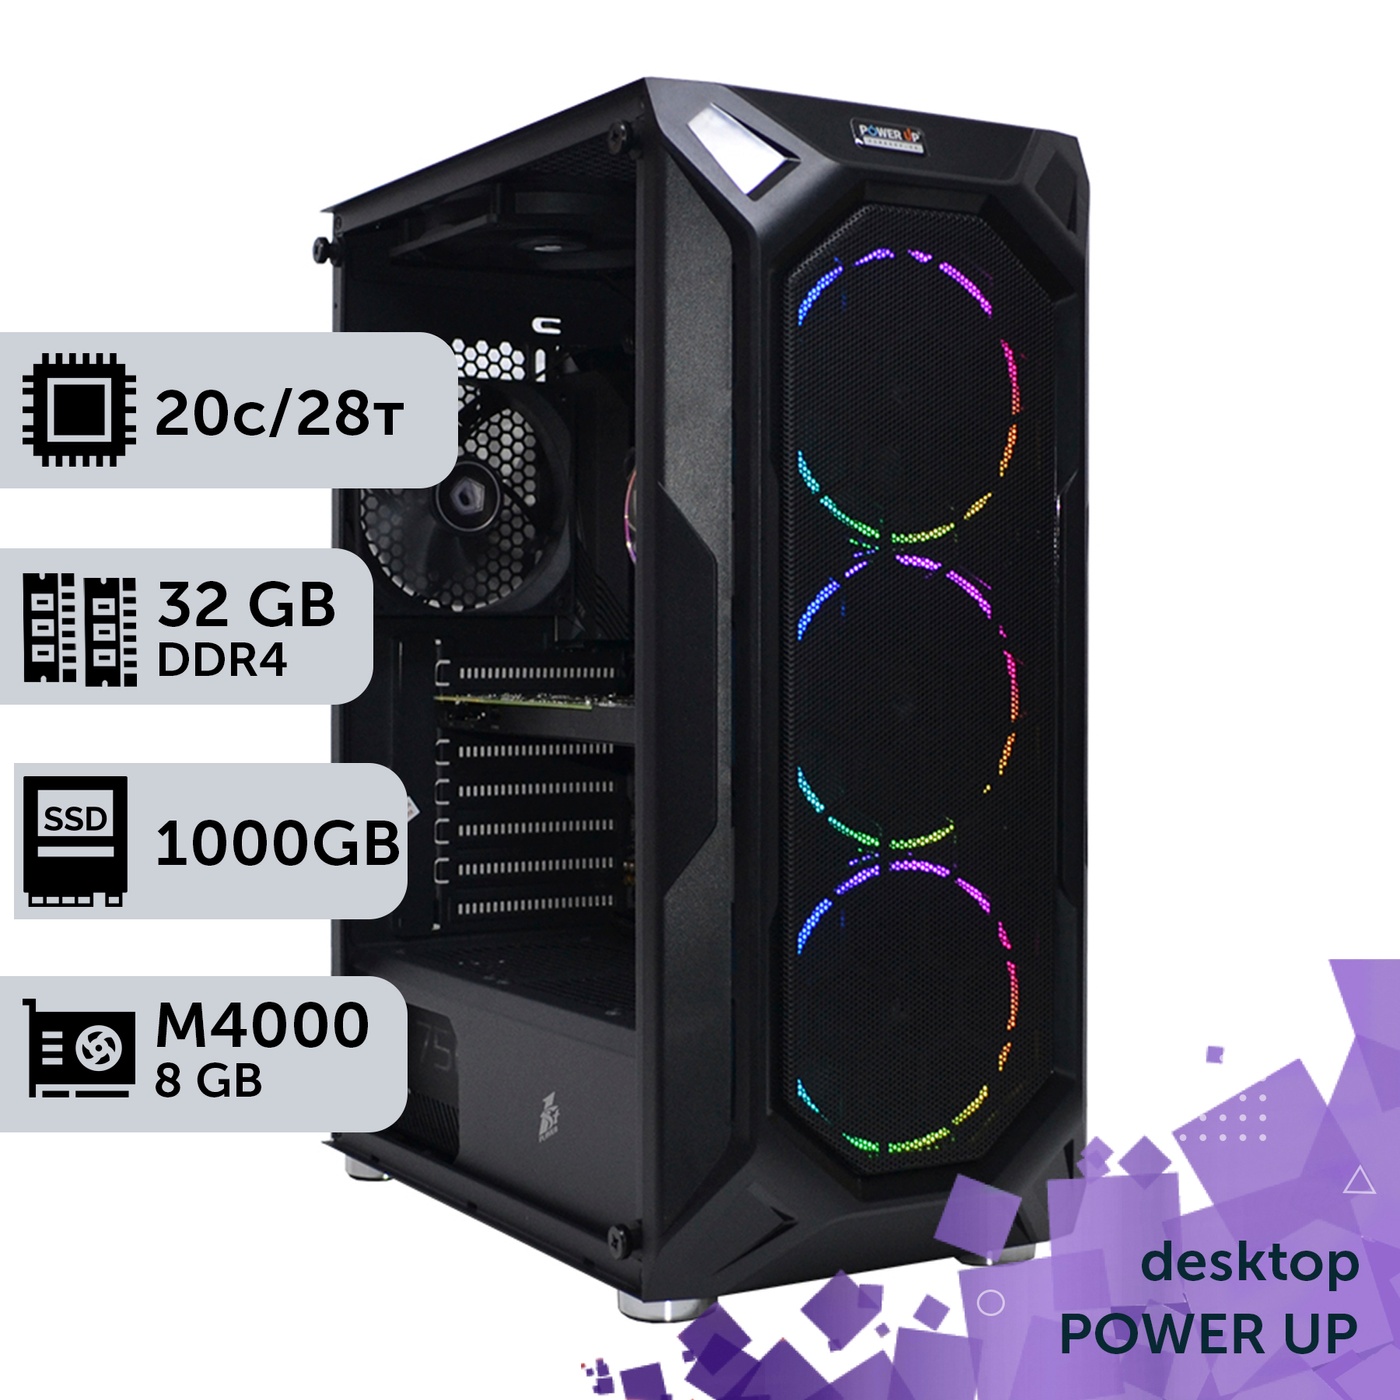 Рабочая станция PowerUp Desktop #309 Core i7 14700K/32 GB/SSD 1TB/NVIDIA Quadro M4000 8GB